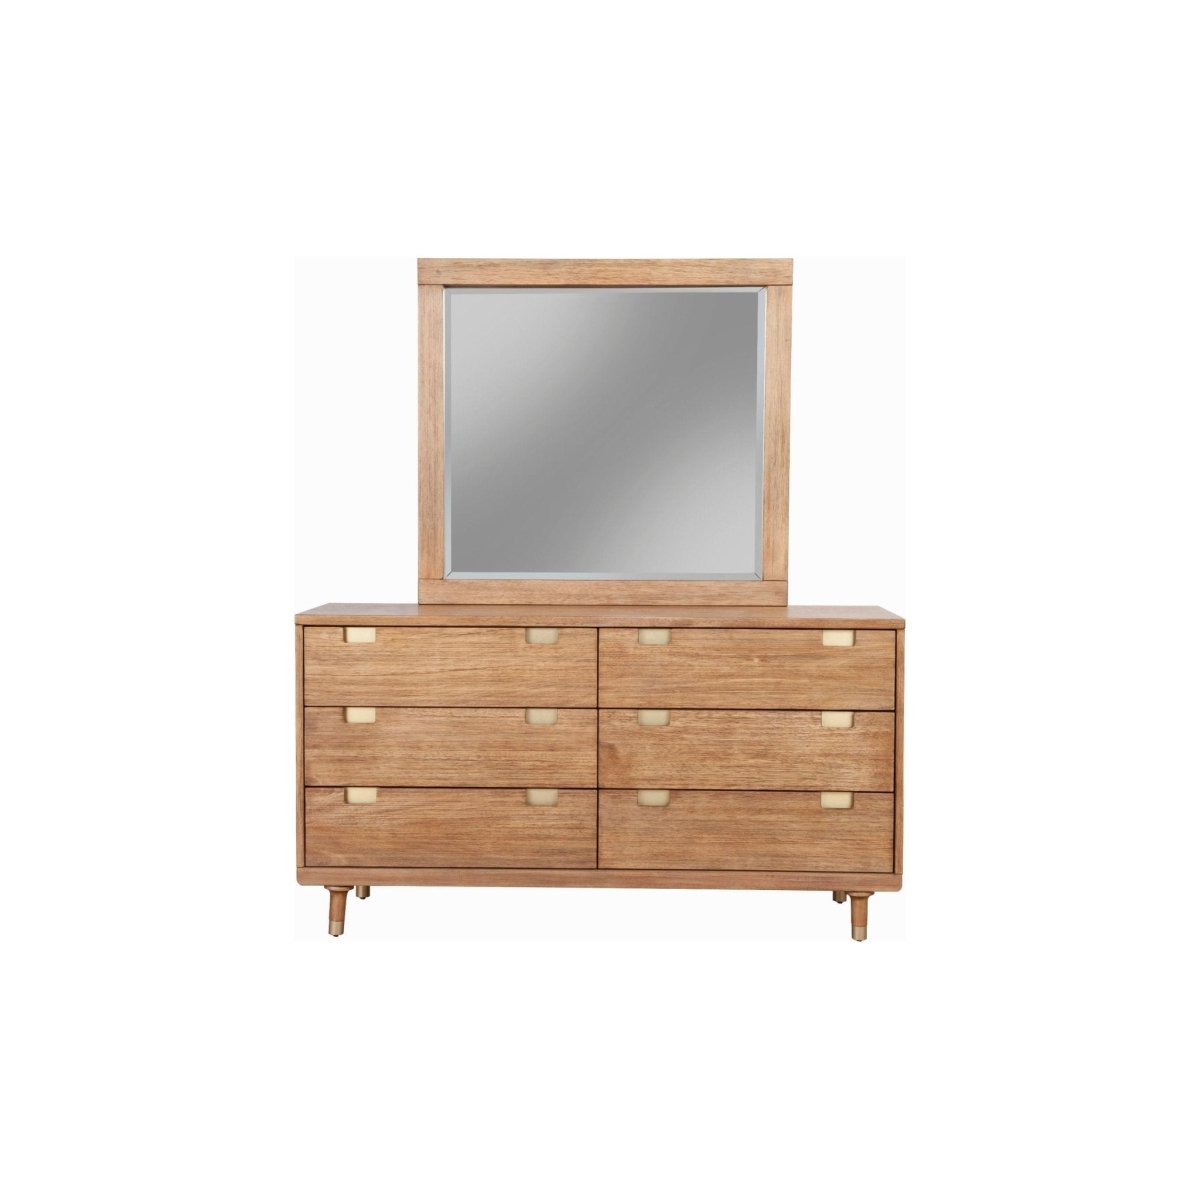 Alpine Furniture Easton Mirror - lily & onyx